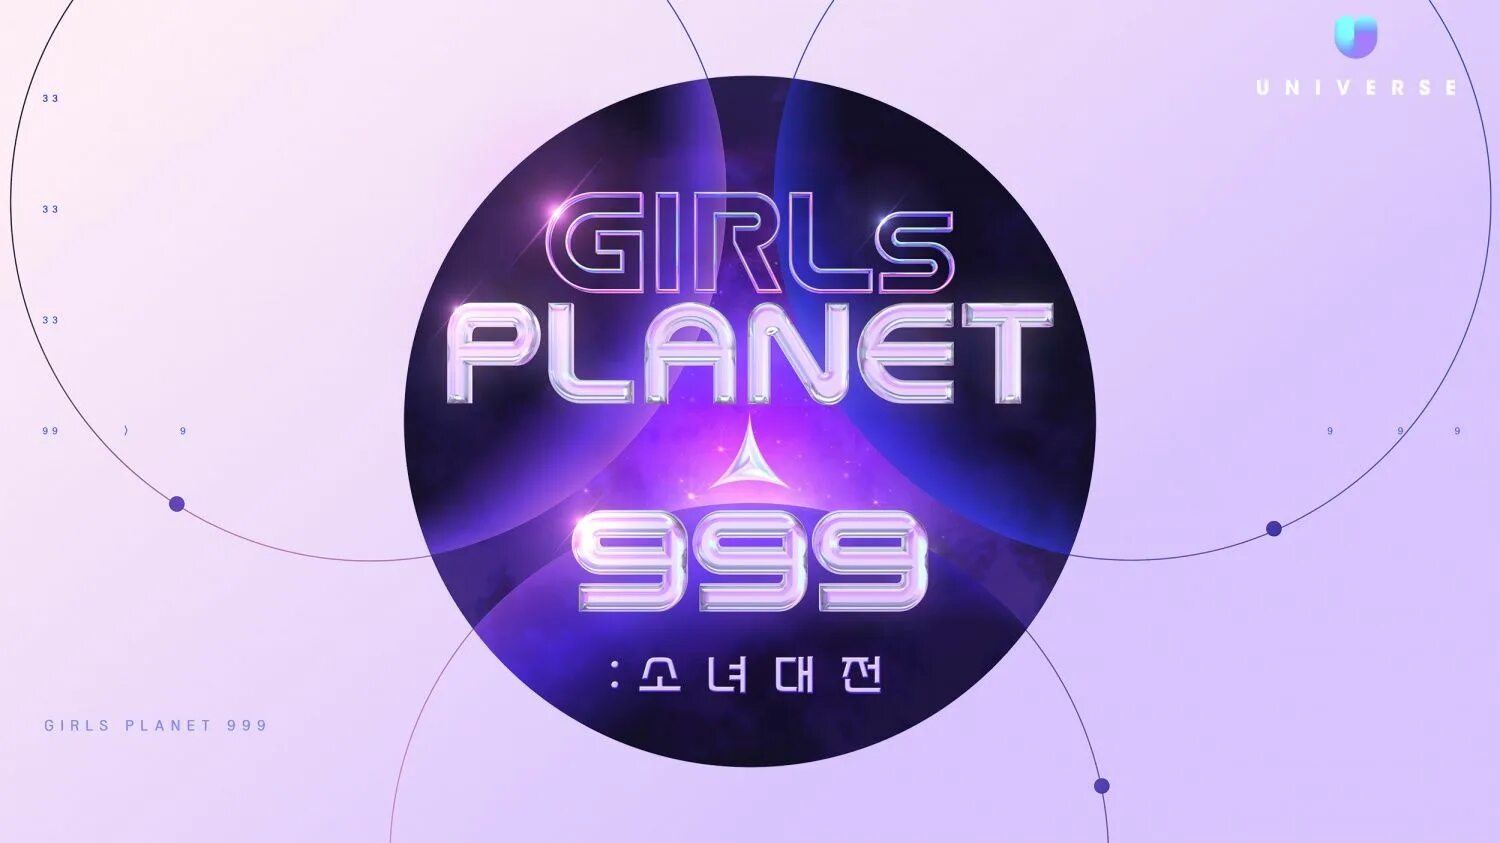 Girls planet 999. Герлз планет 999. Бахи герлз планет 999. Girls Planet 999 участницы.